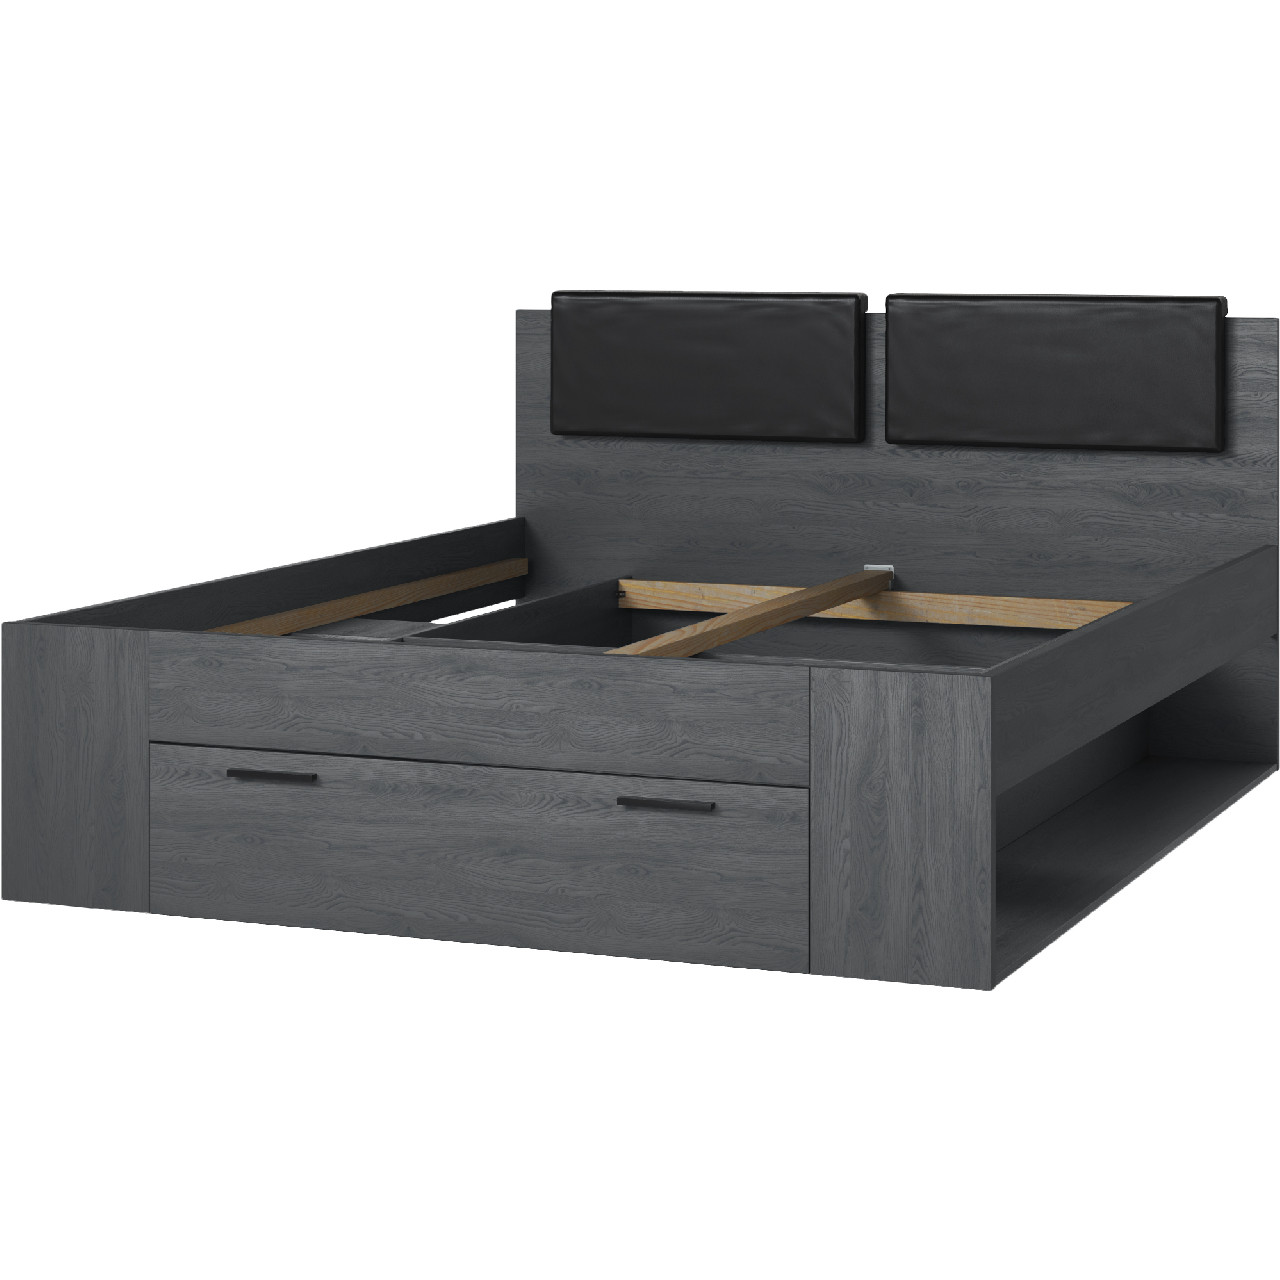 Bed 160x200 GALAXY GX51 carbon oak